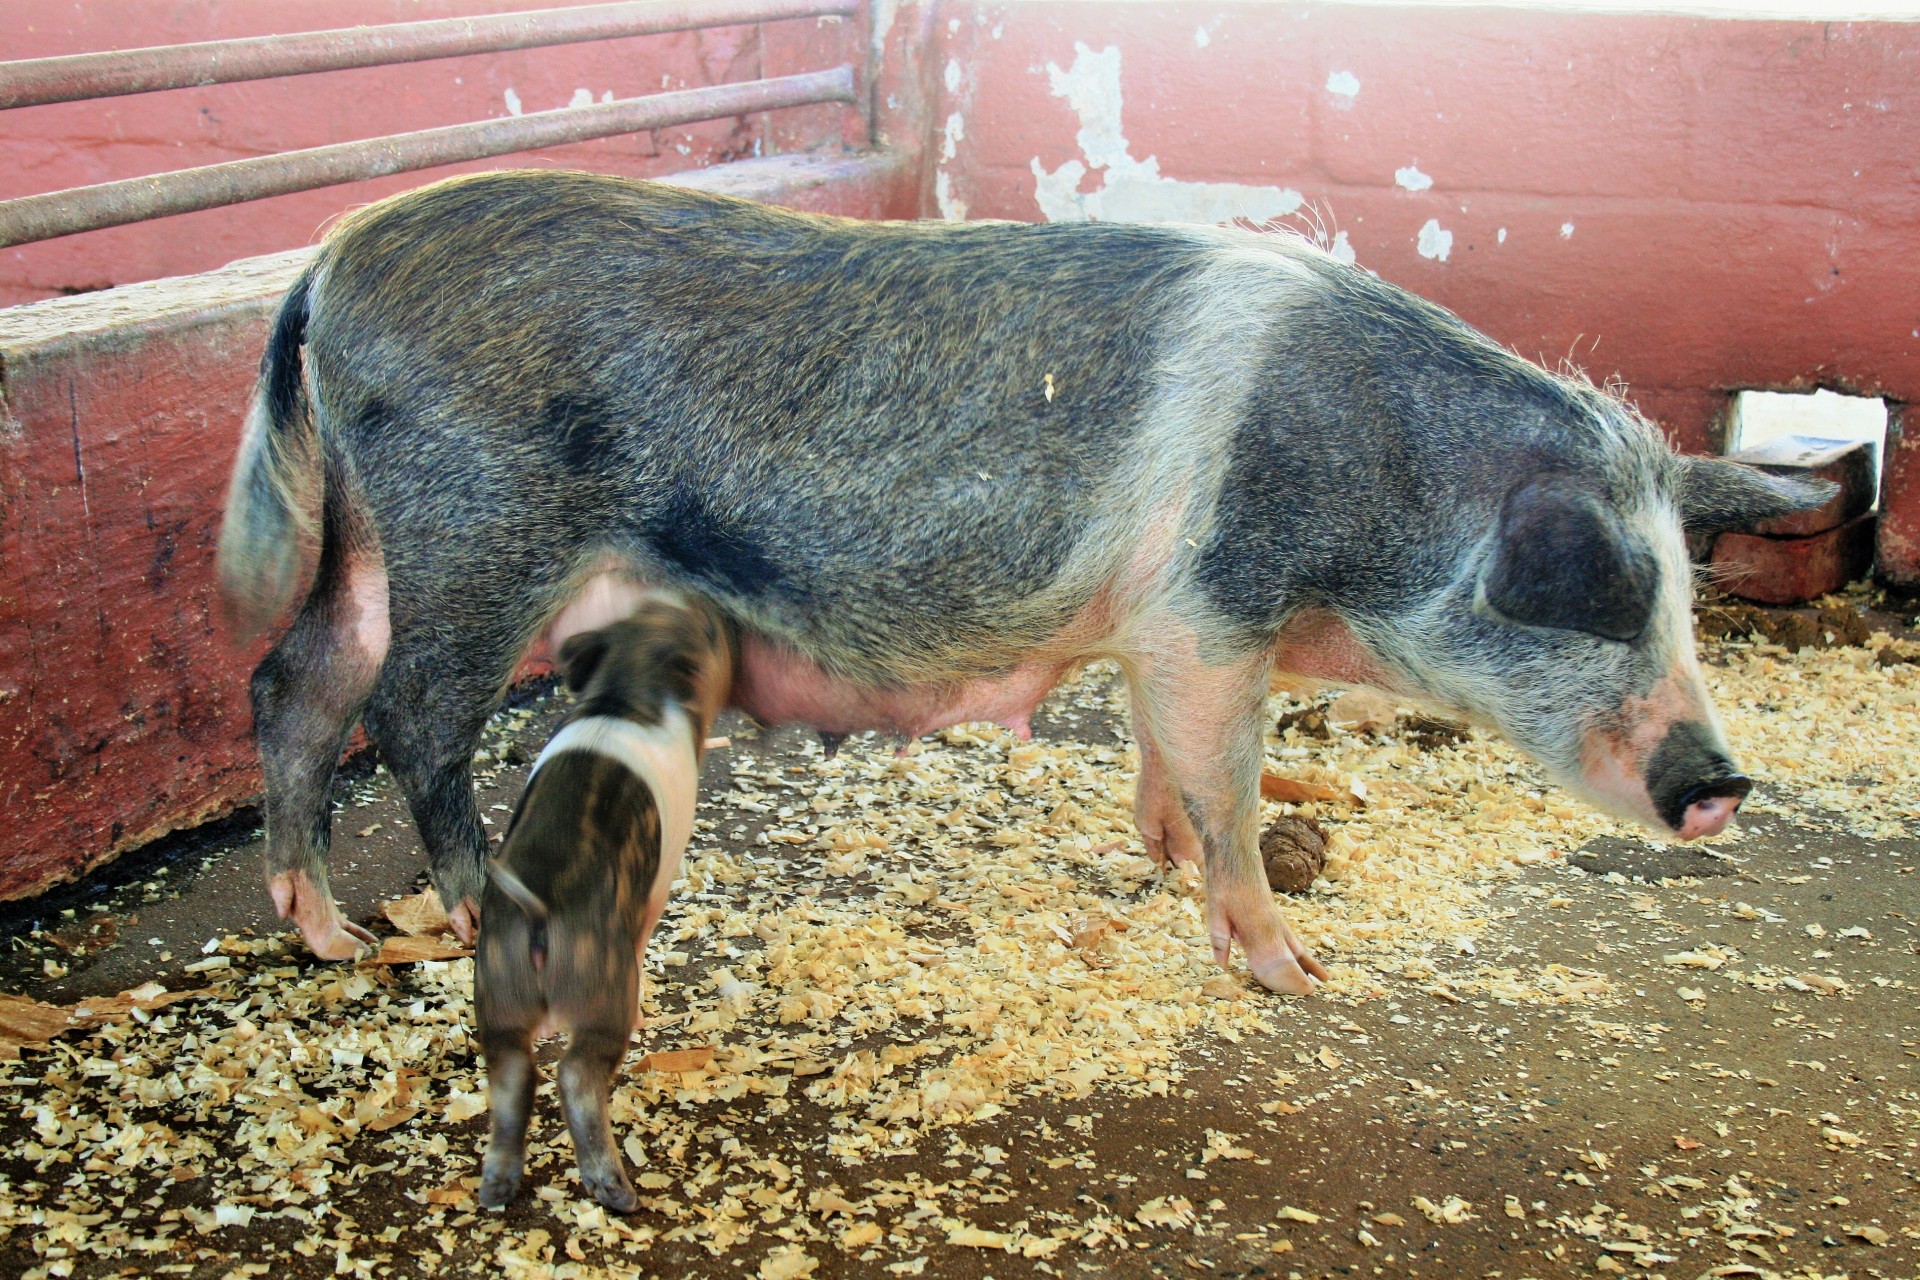 animal farm pig free photo